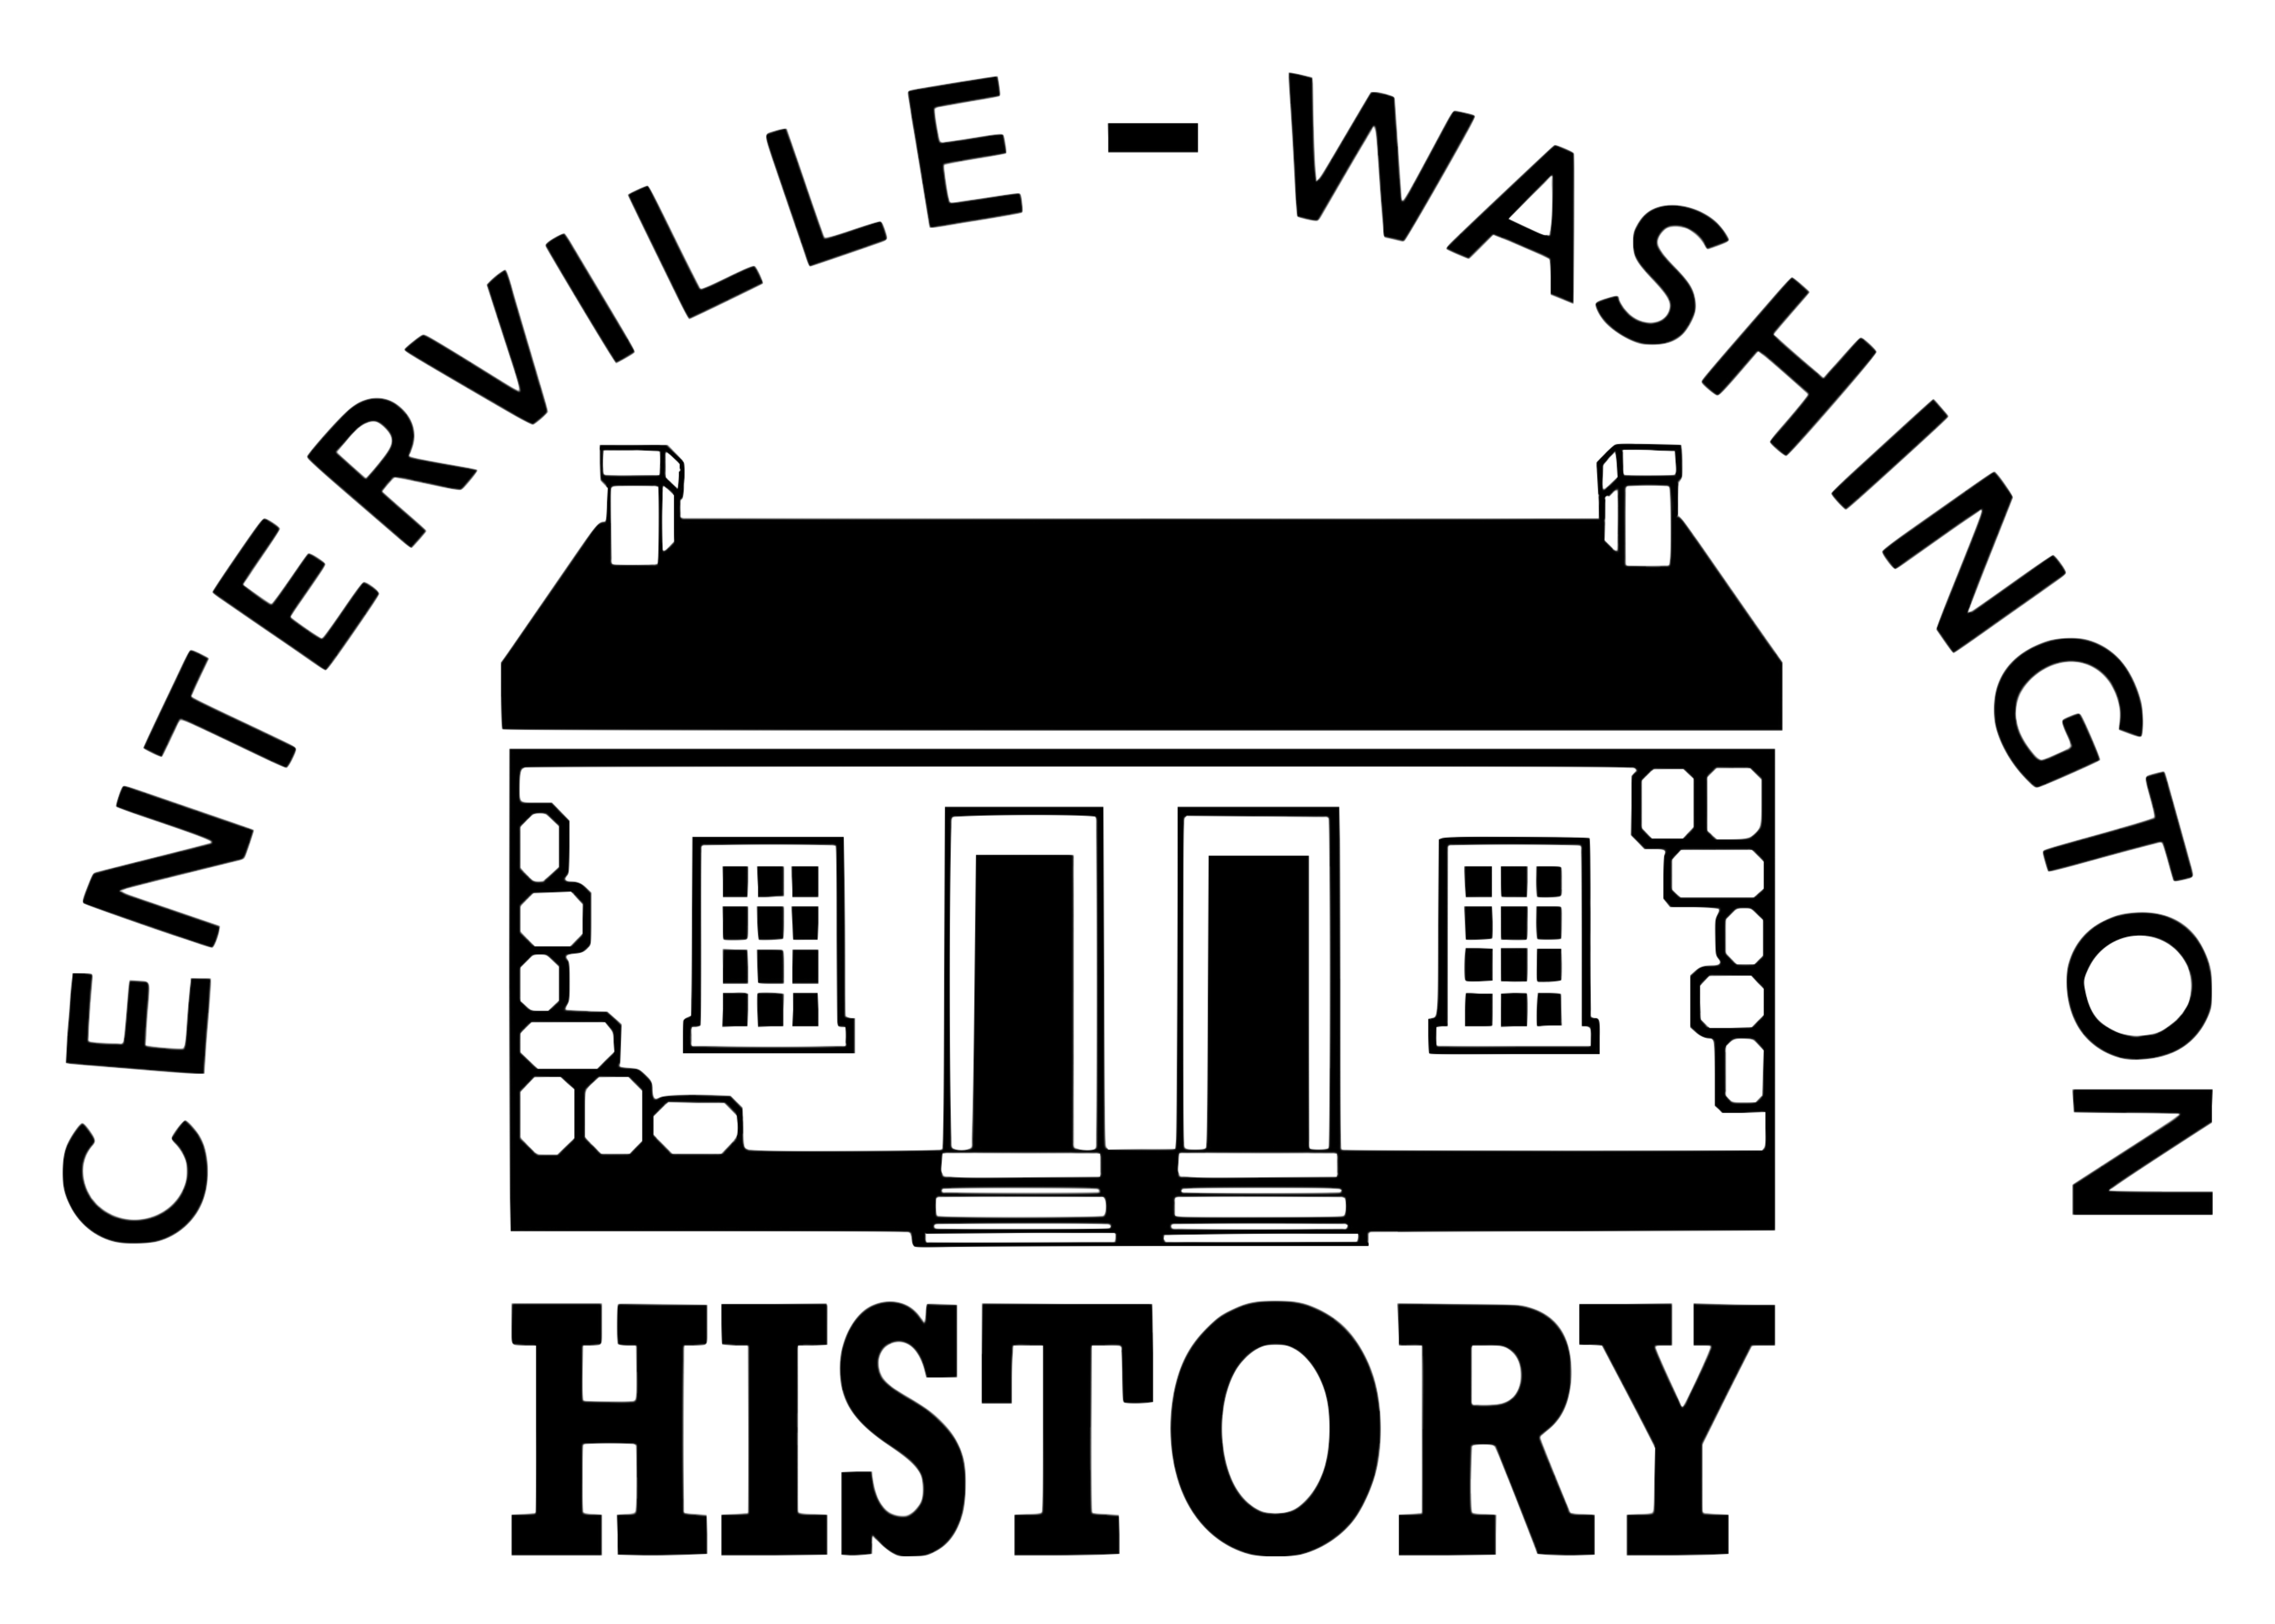 Centerville Washington History